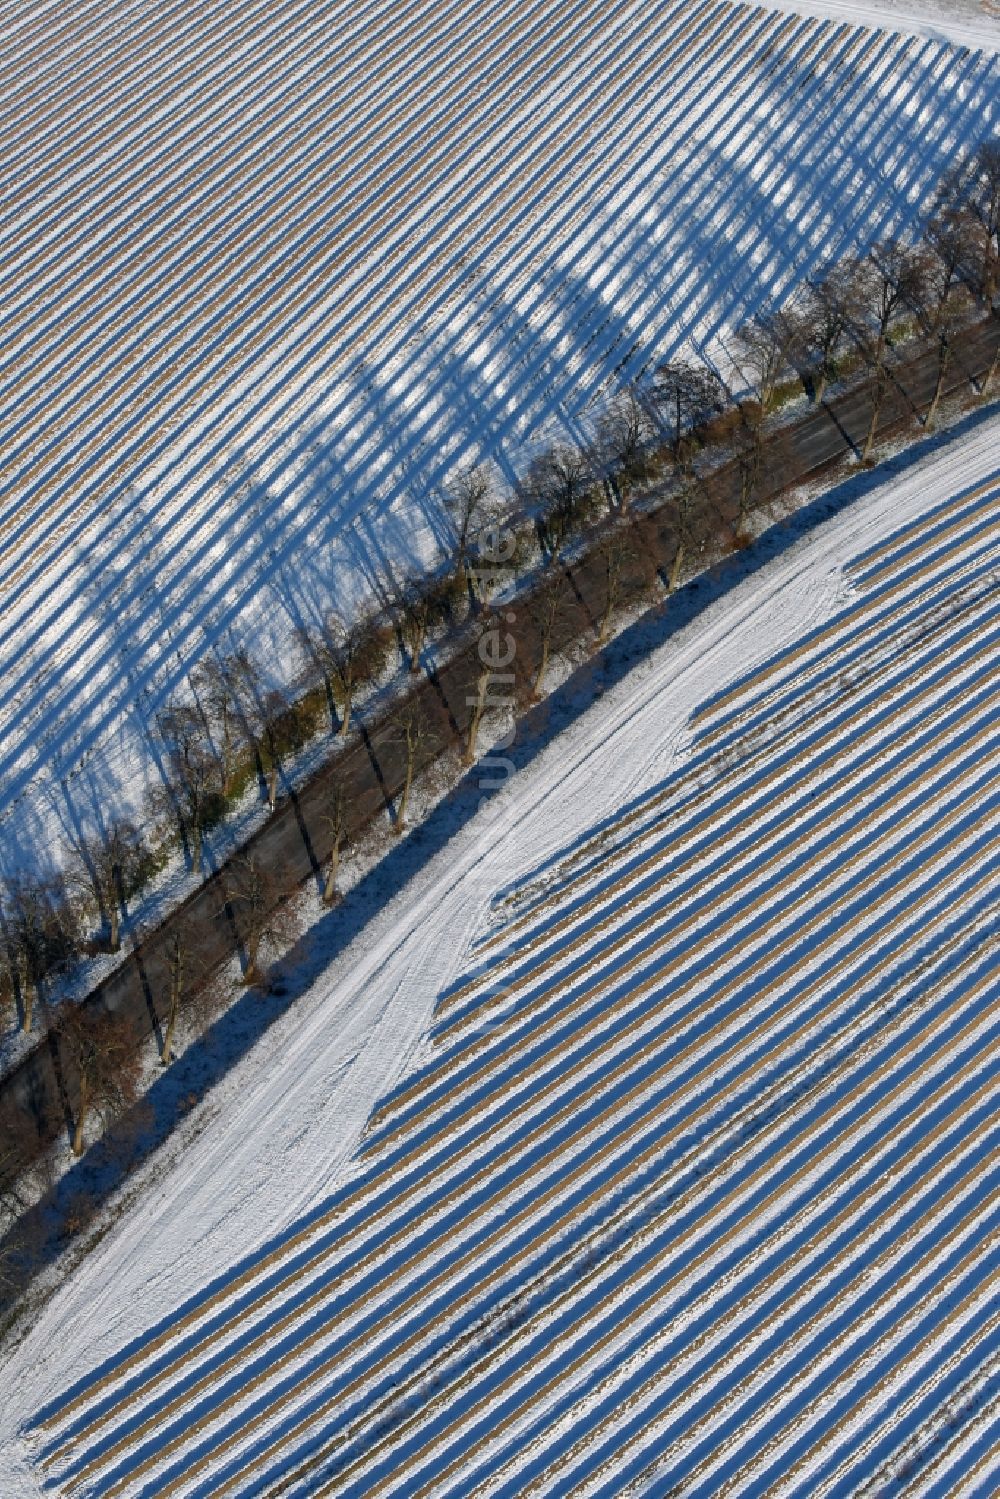 Roskow von oben - Winterliche schneebedeckte Reihen mit Spargel- Anbau auf Feld- Flächen mit Allee, deren Bäume lange Schatten werfen in Lünow im Bundesland Brandenburg